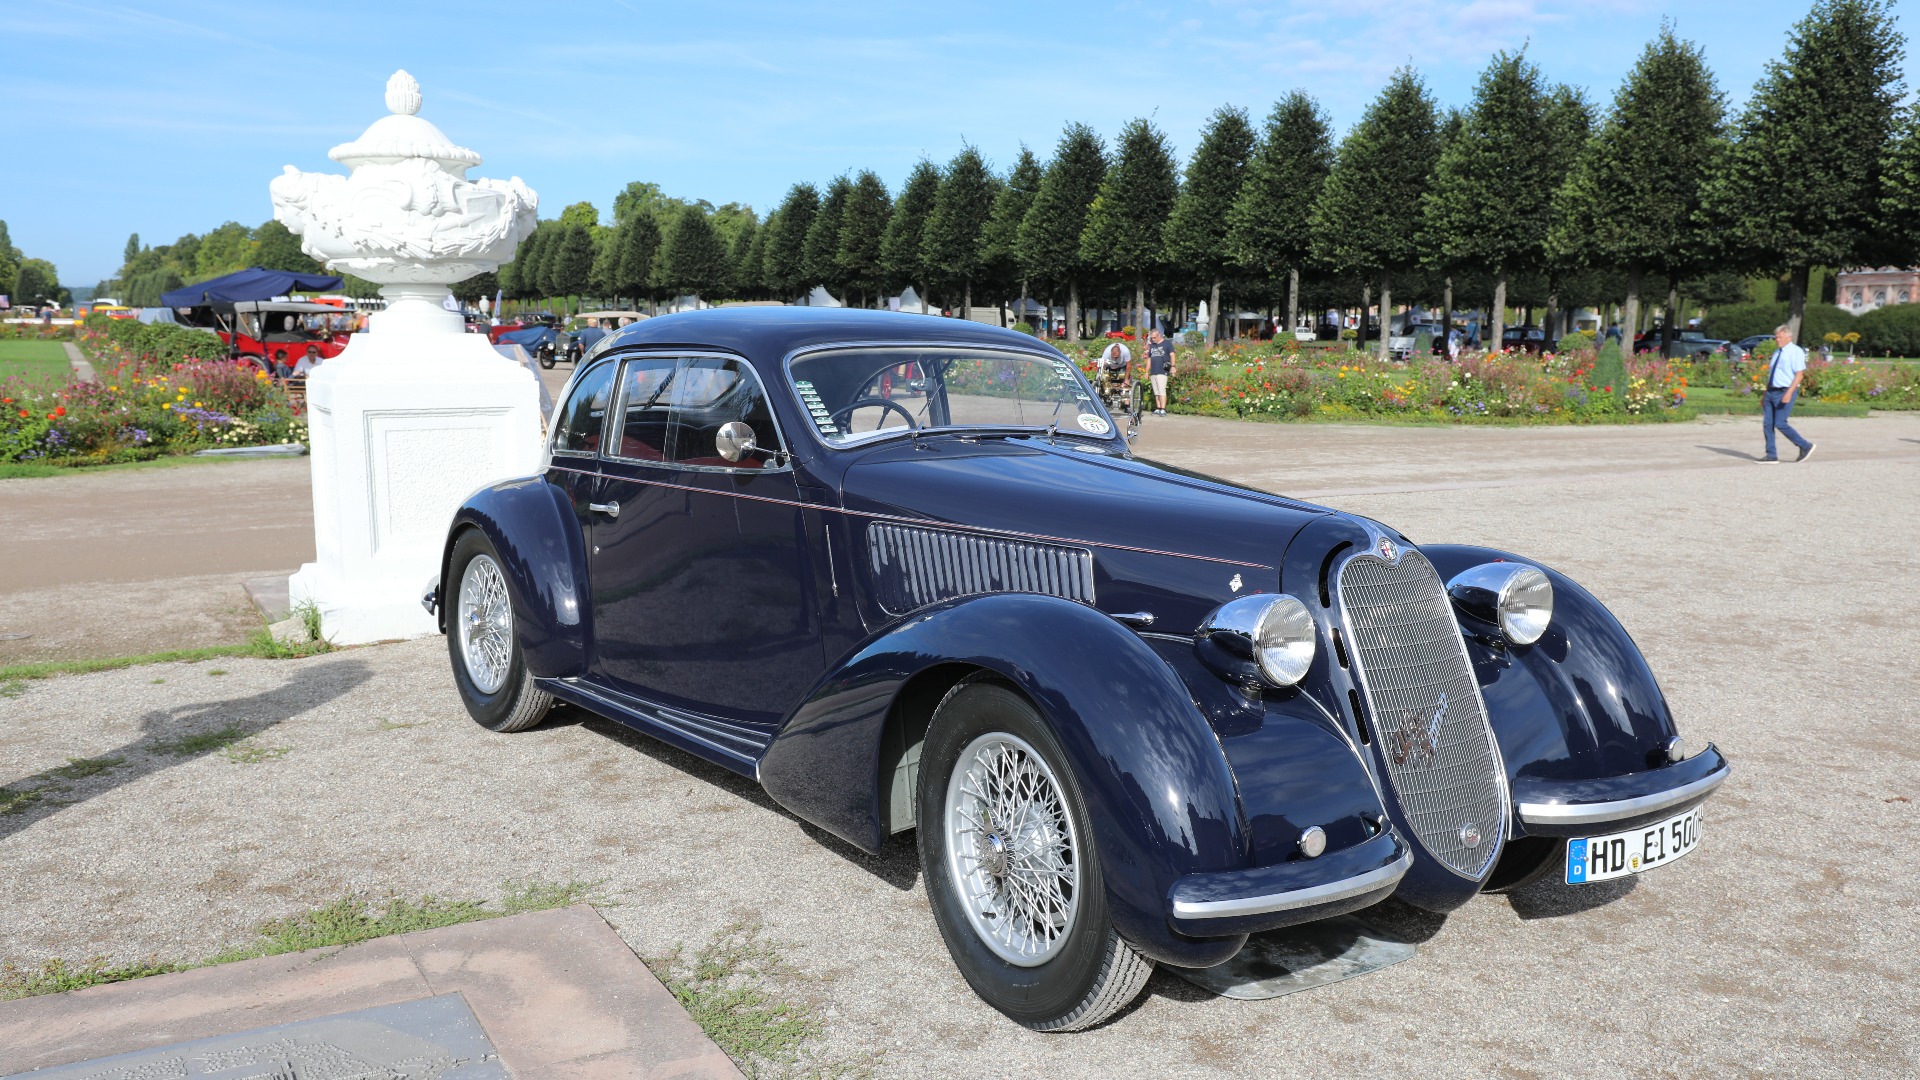 Den internasjonale dommerjuryen valgte denne fantastiske 1938 Alfa Romeo 6C 2300 MM Touring Coupe som Best of Show. 